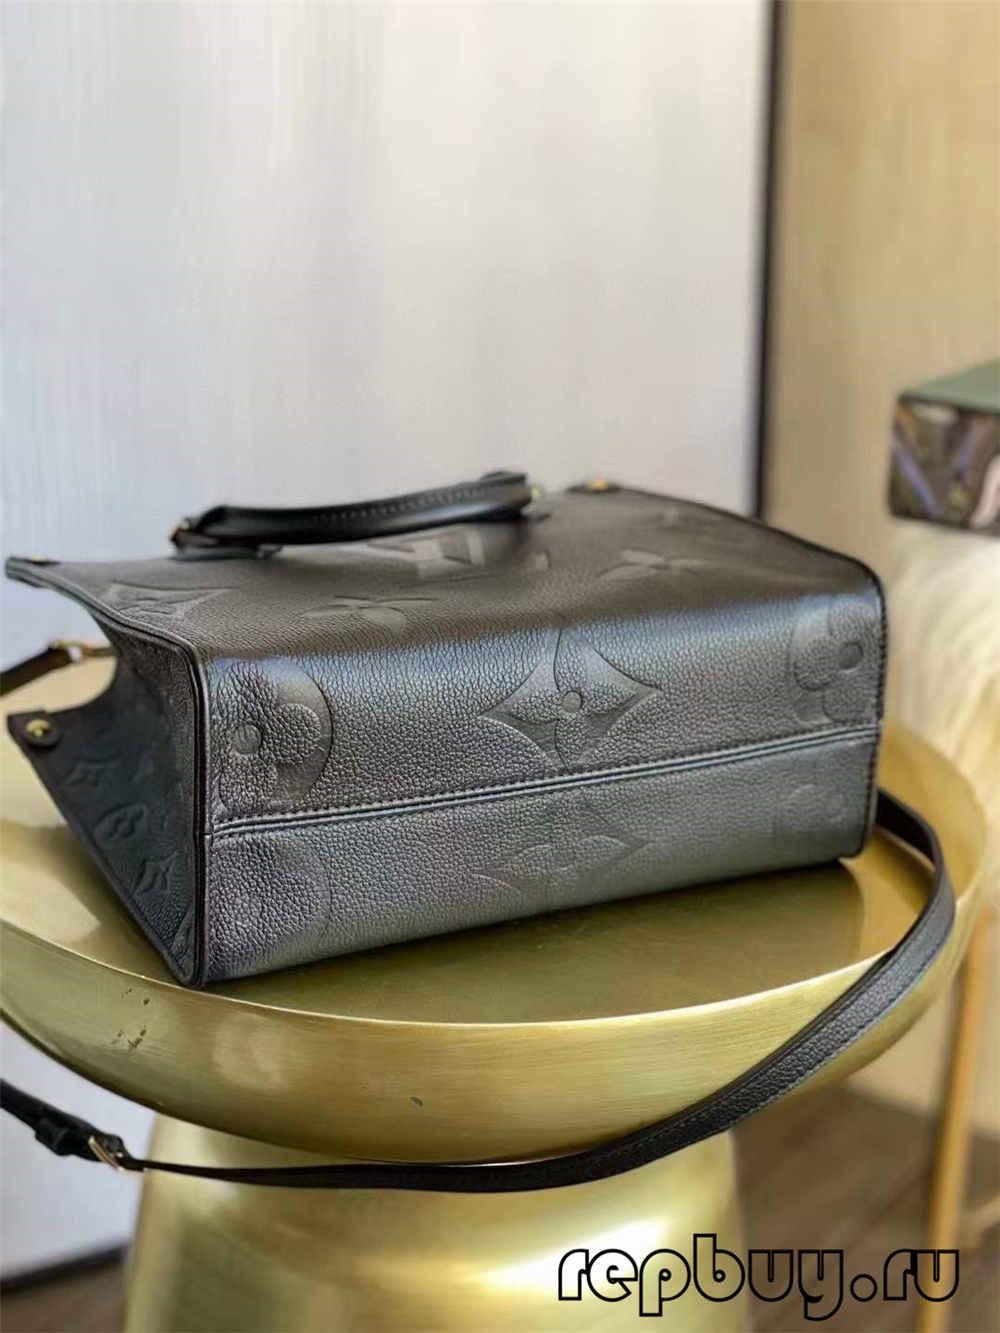 Louis Vuitton ONTHEGO M45653 Best quality replica bag (2022 updated)-Najlepsza jakość fałszywych torebek Louis Vuitton Sklep internetowy, projektant repliki torebki ru